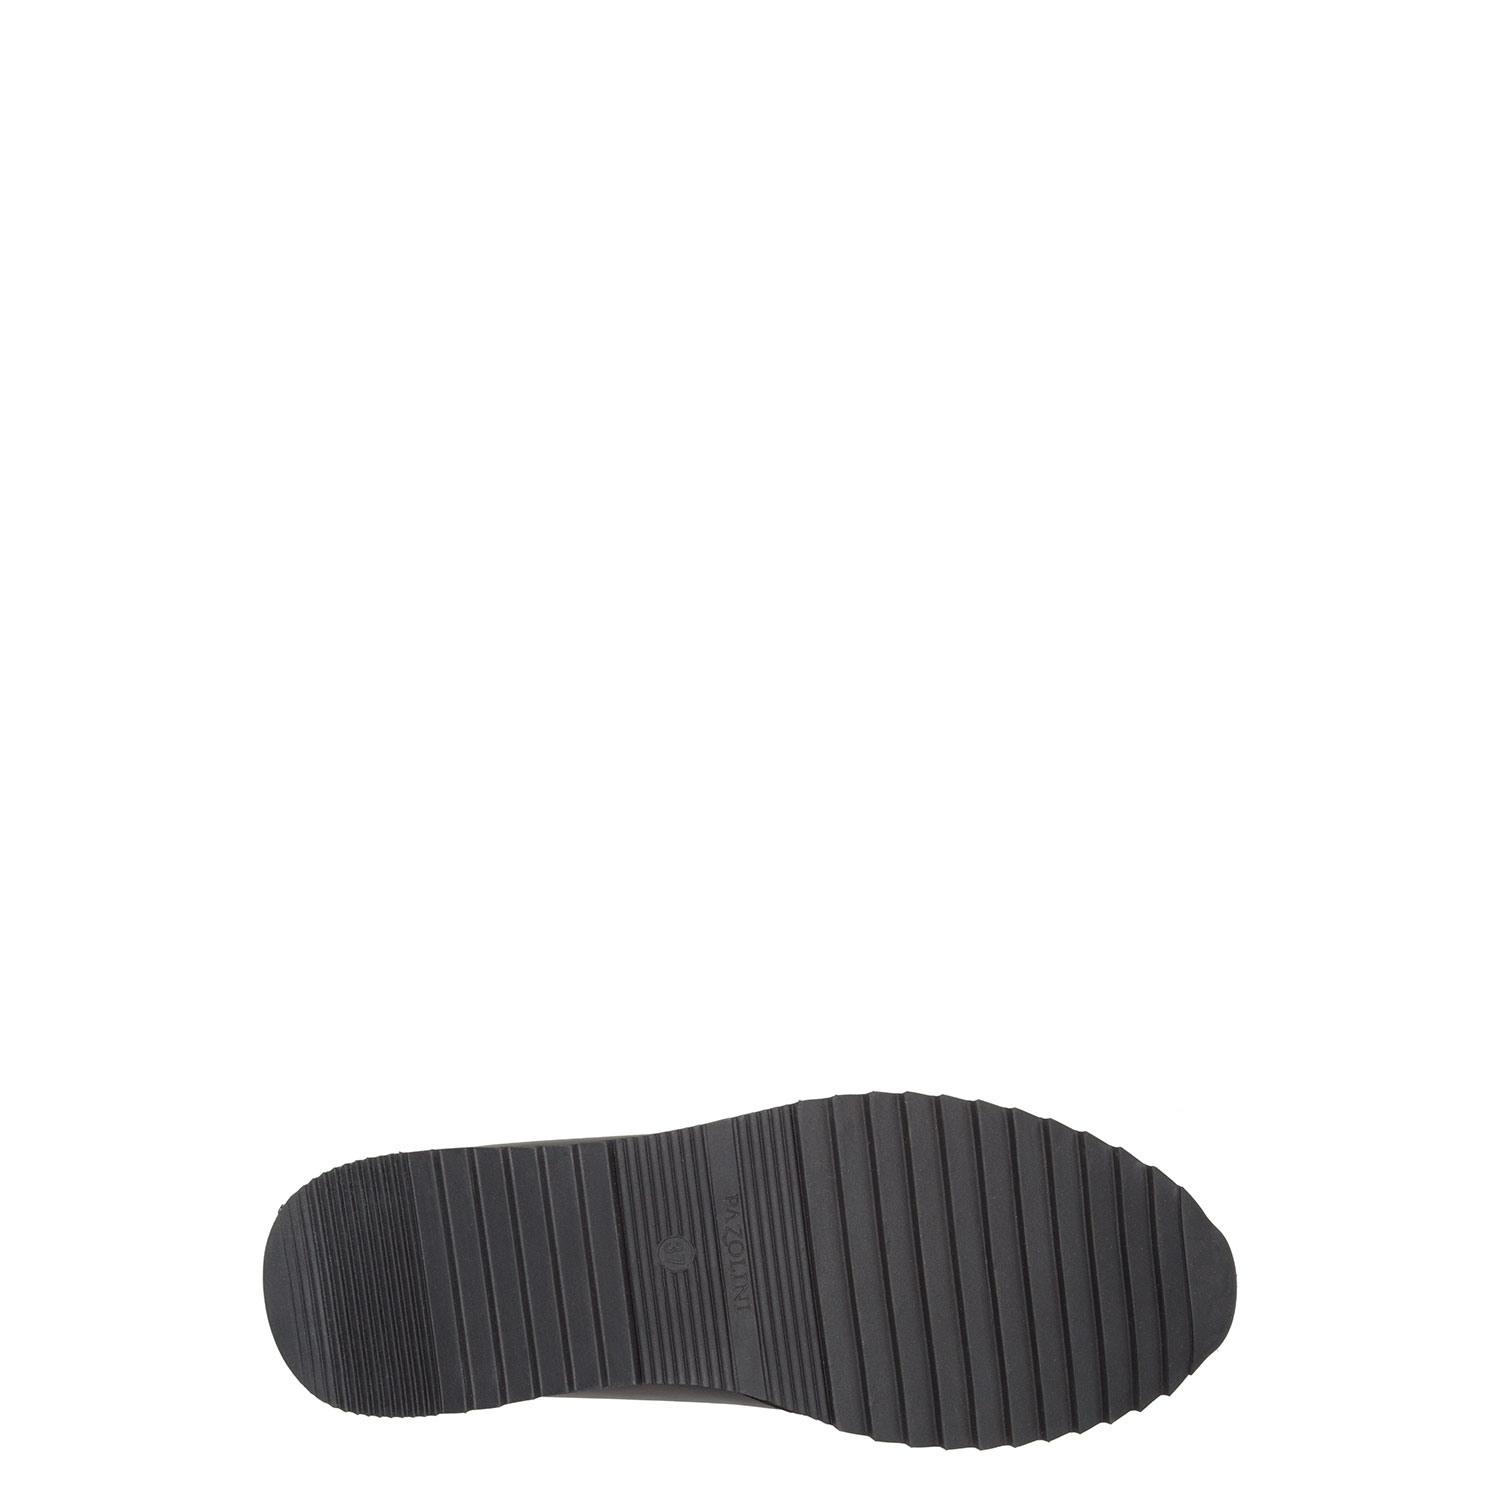 Выскоие кроссовки из натуральной кожи и текстиля PAZOLINI JH-END16-20